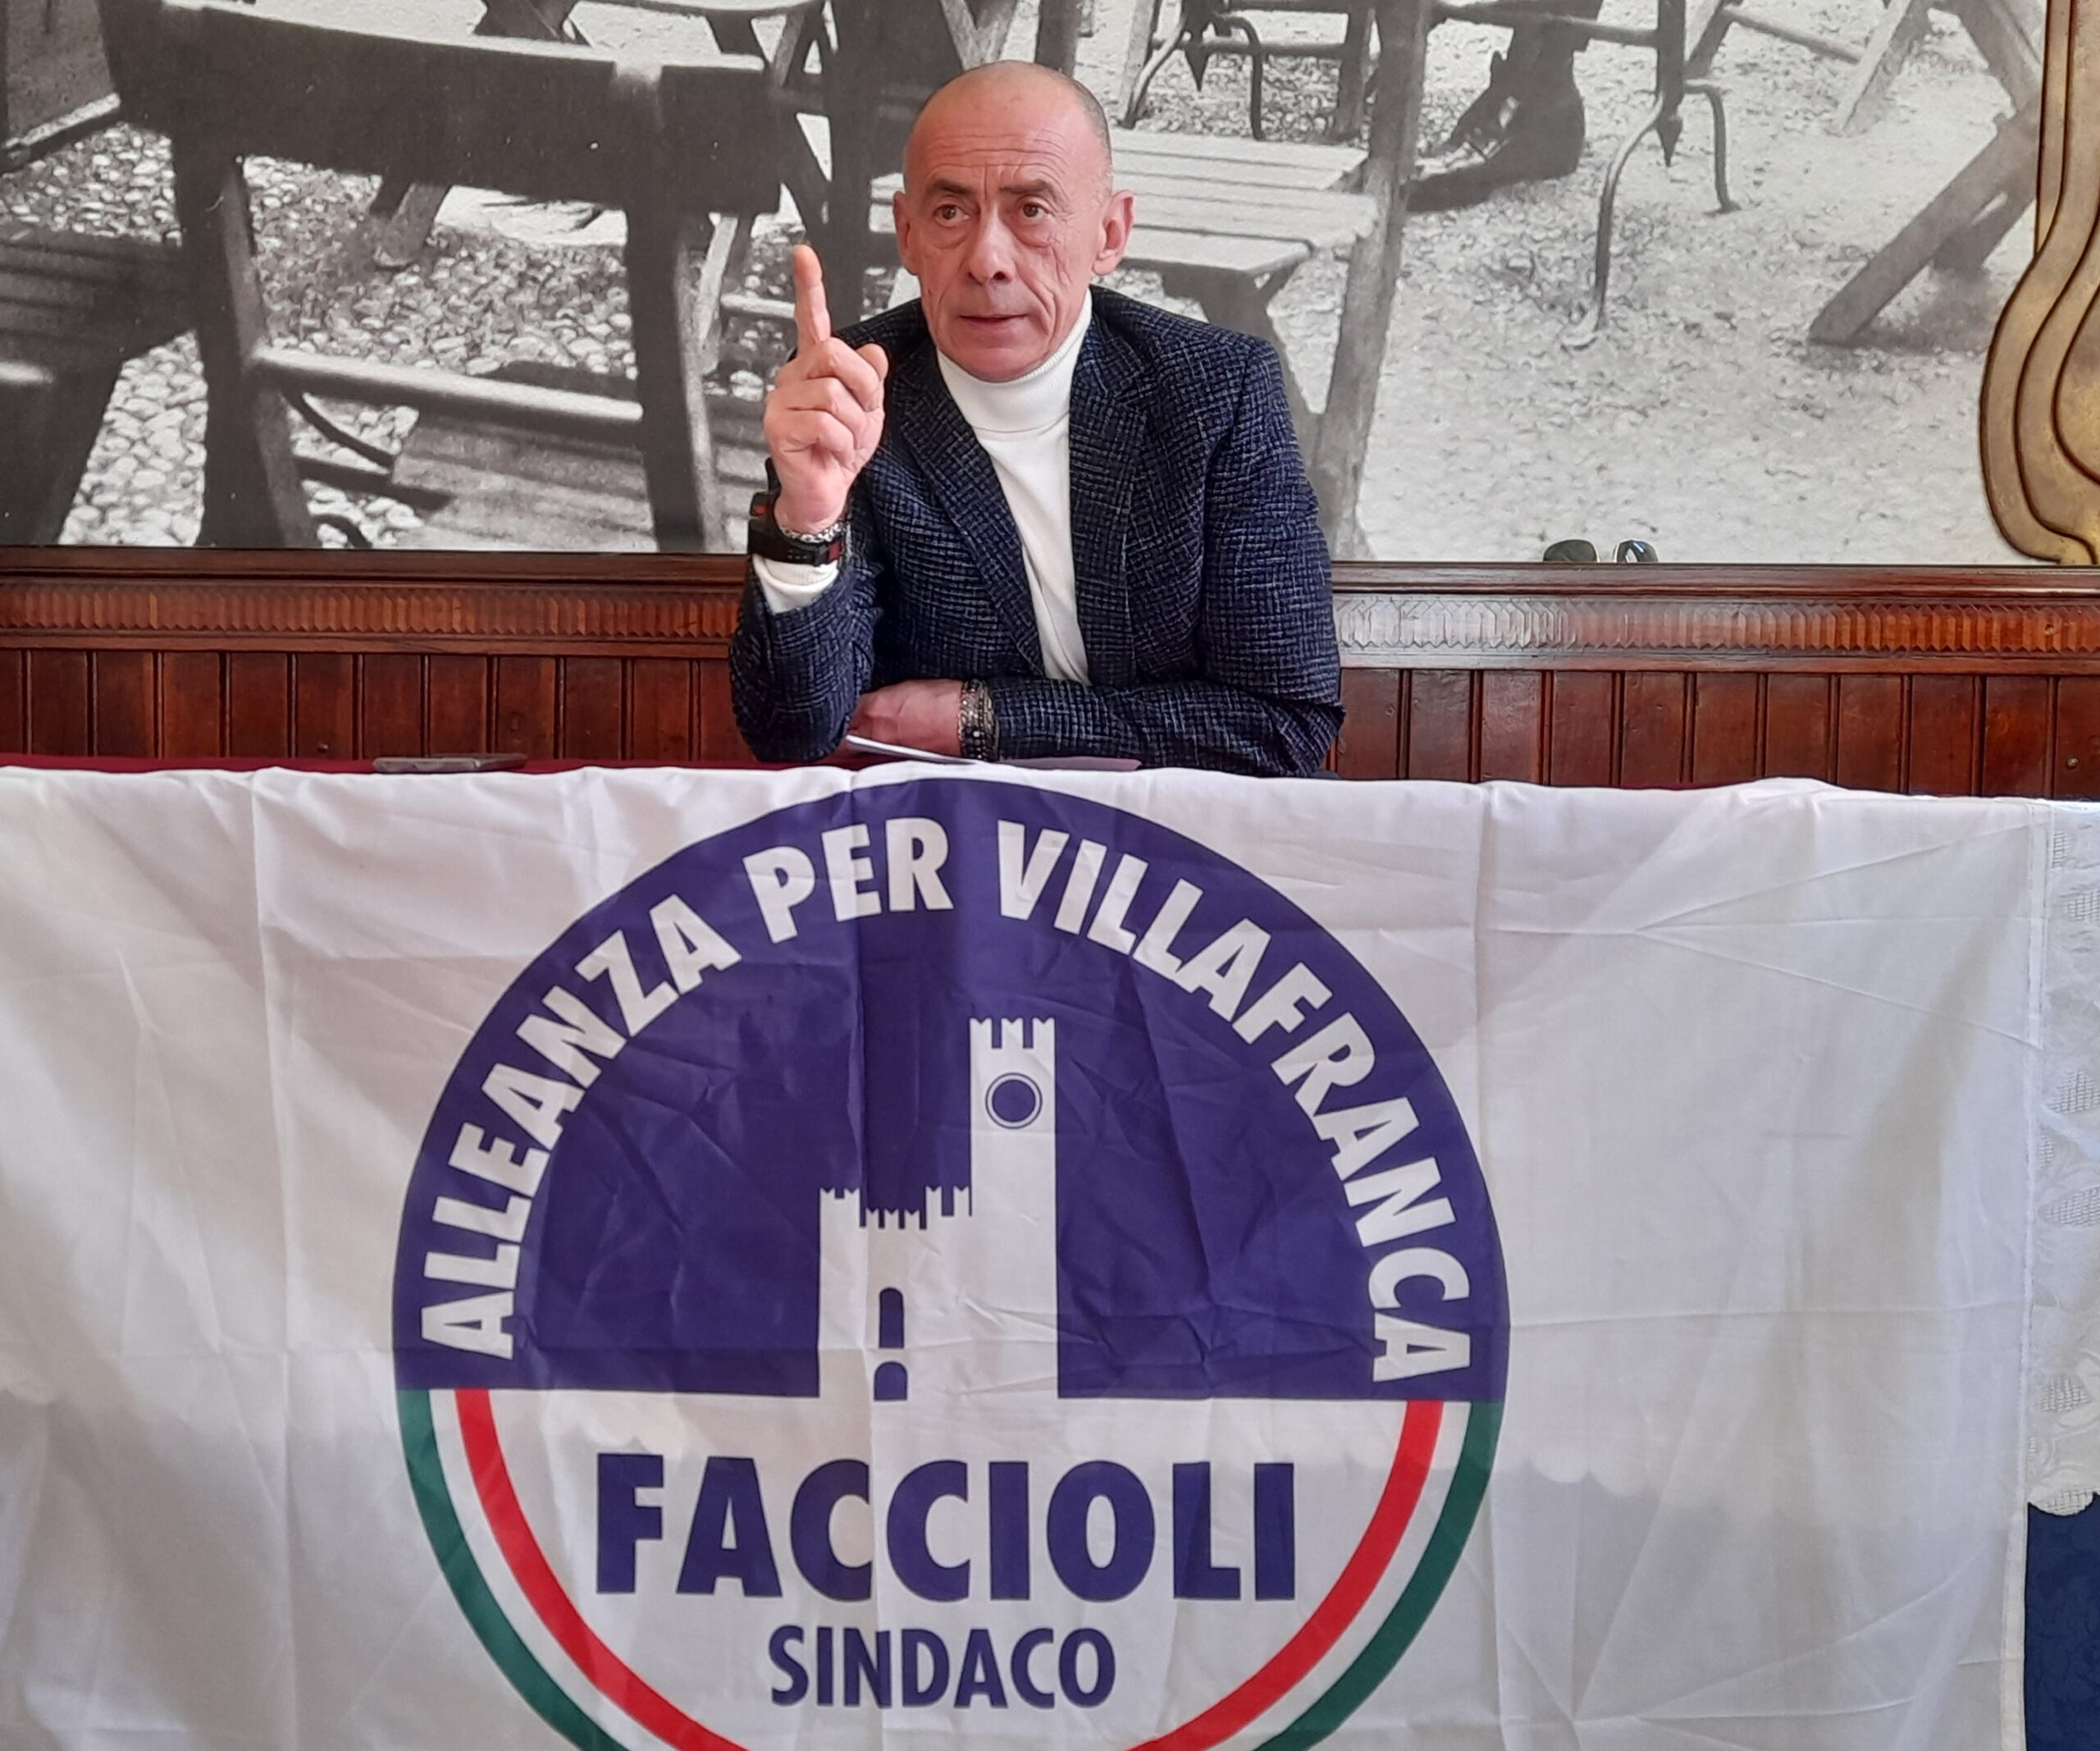 Mario Faccioli apre le danze a Villafranca: sul piatto la sua candidatura a disposizione del centrodestra